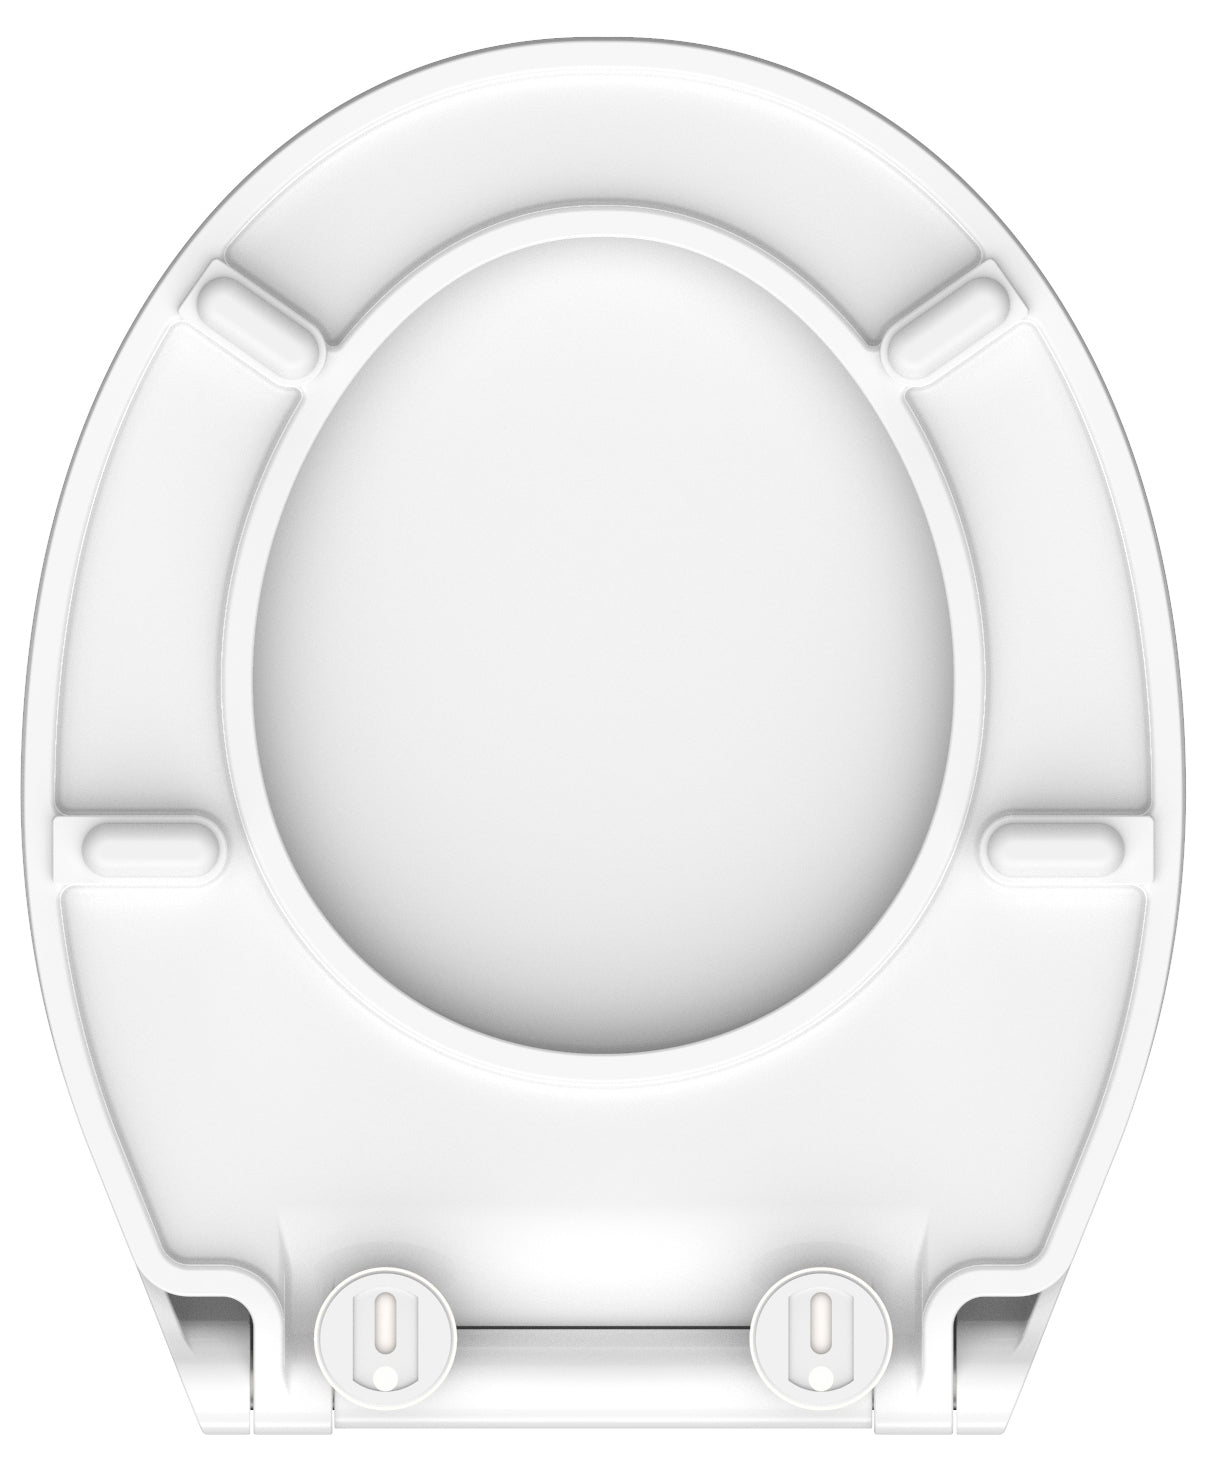 Vit slimmad toalettsits universal i Duroplast - BÄST. CC-mått: 70-190mm Längd: 456mm Bredd: 380mm.